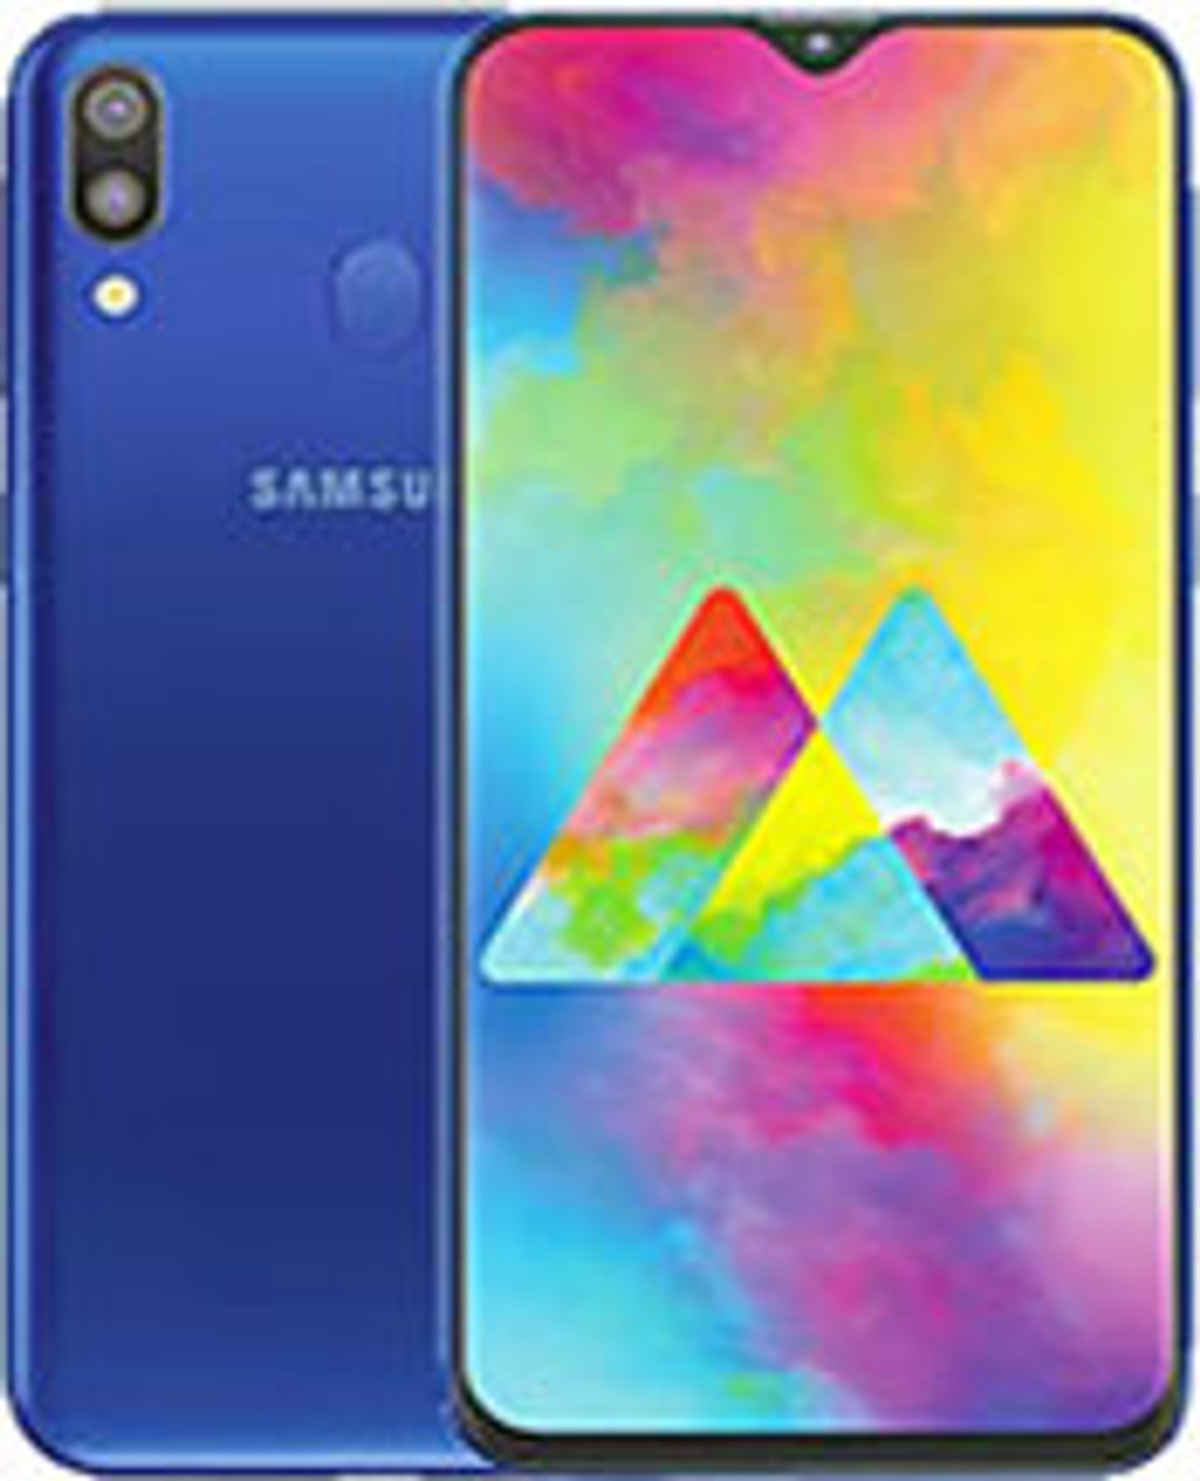 Best Samsung 3 GB RAM Phones Under 15000 in India ( 9